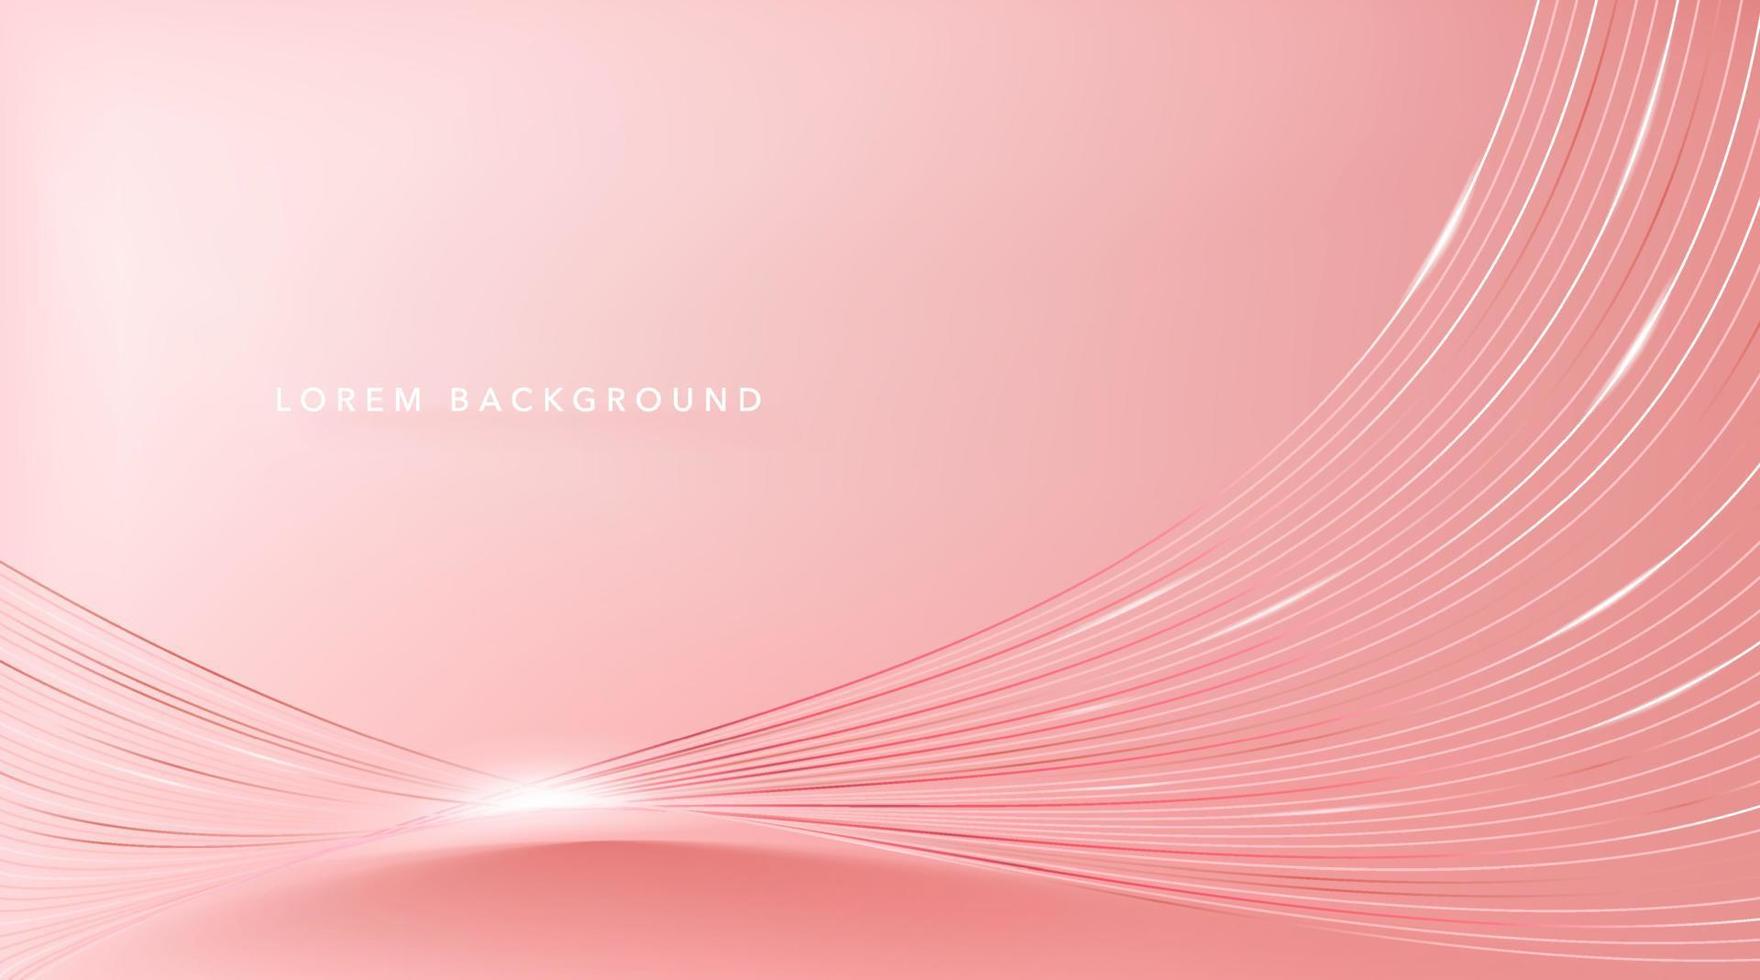 elegante fondo rosa abstracto con finas líneas onduladas. vector